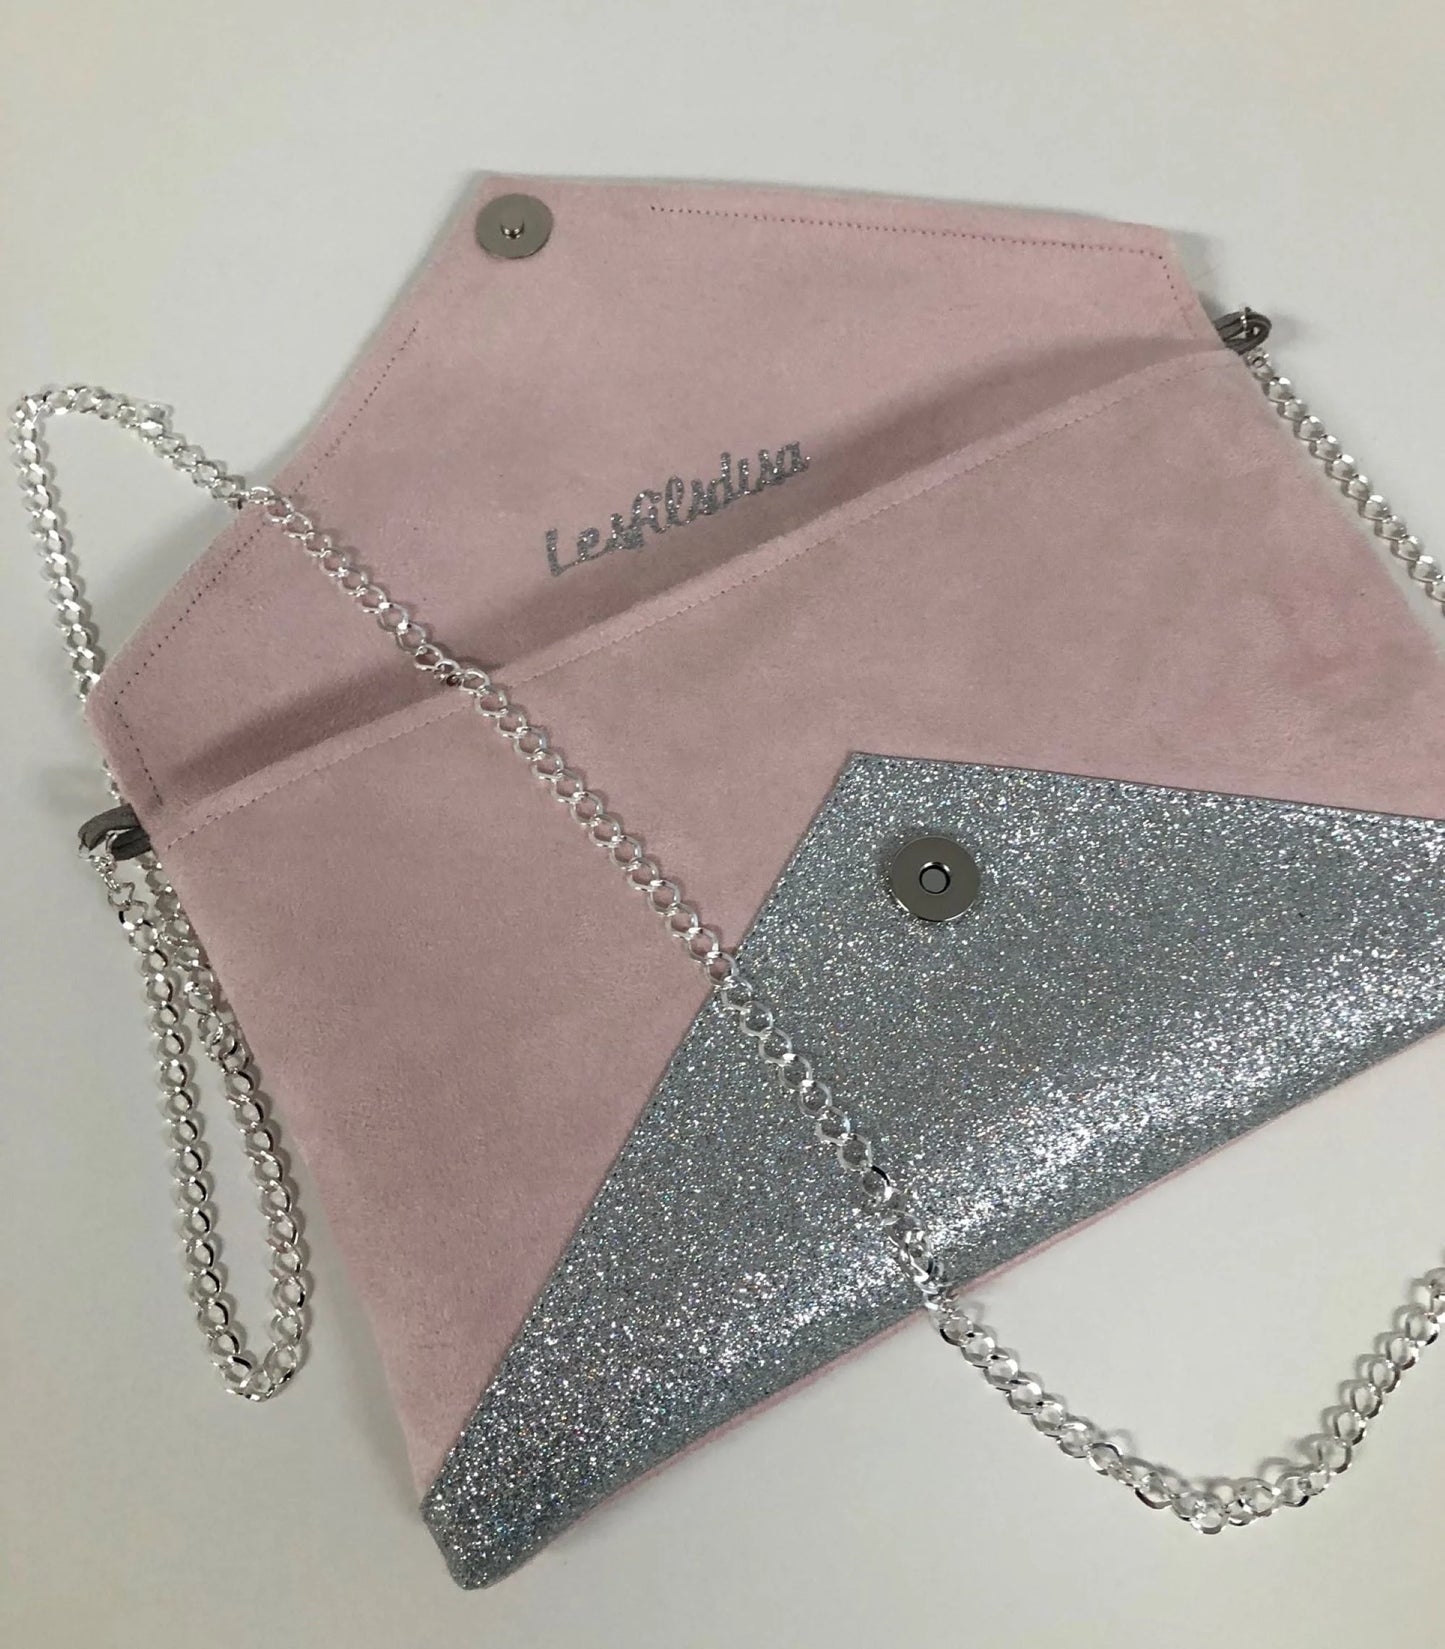 Vue ouverte du sac pochette Isa rose pâle à paillettes argentées.